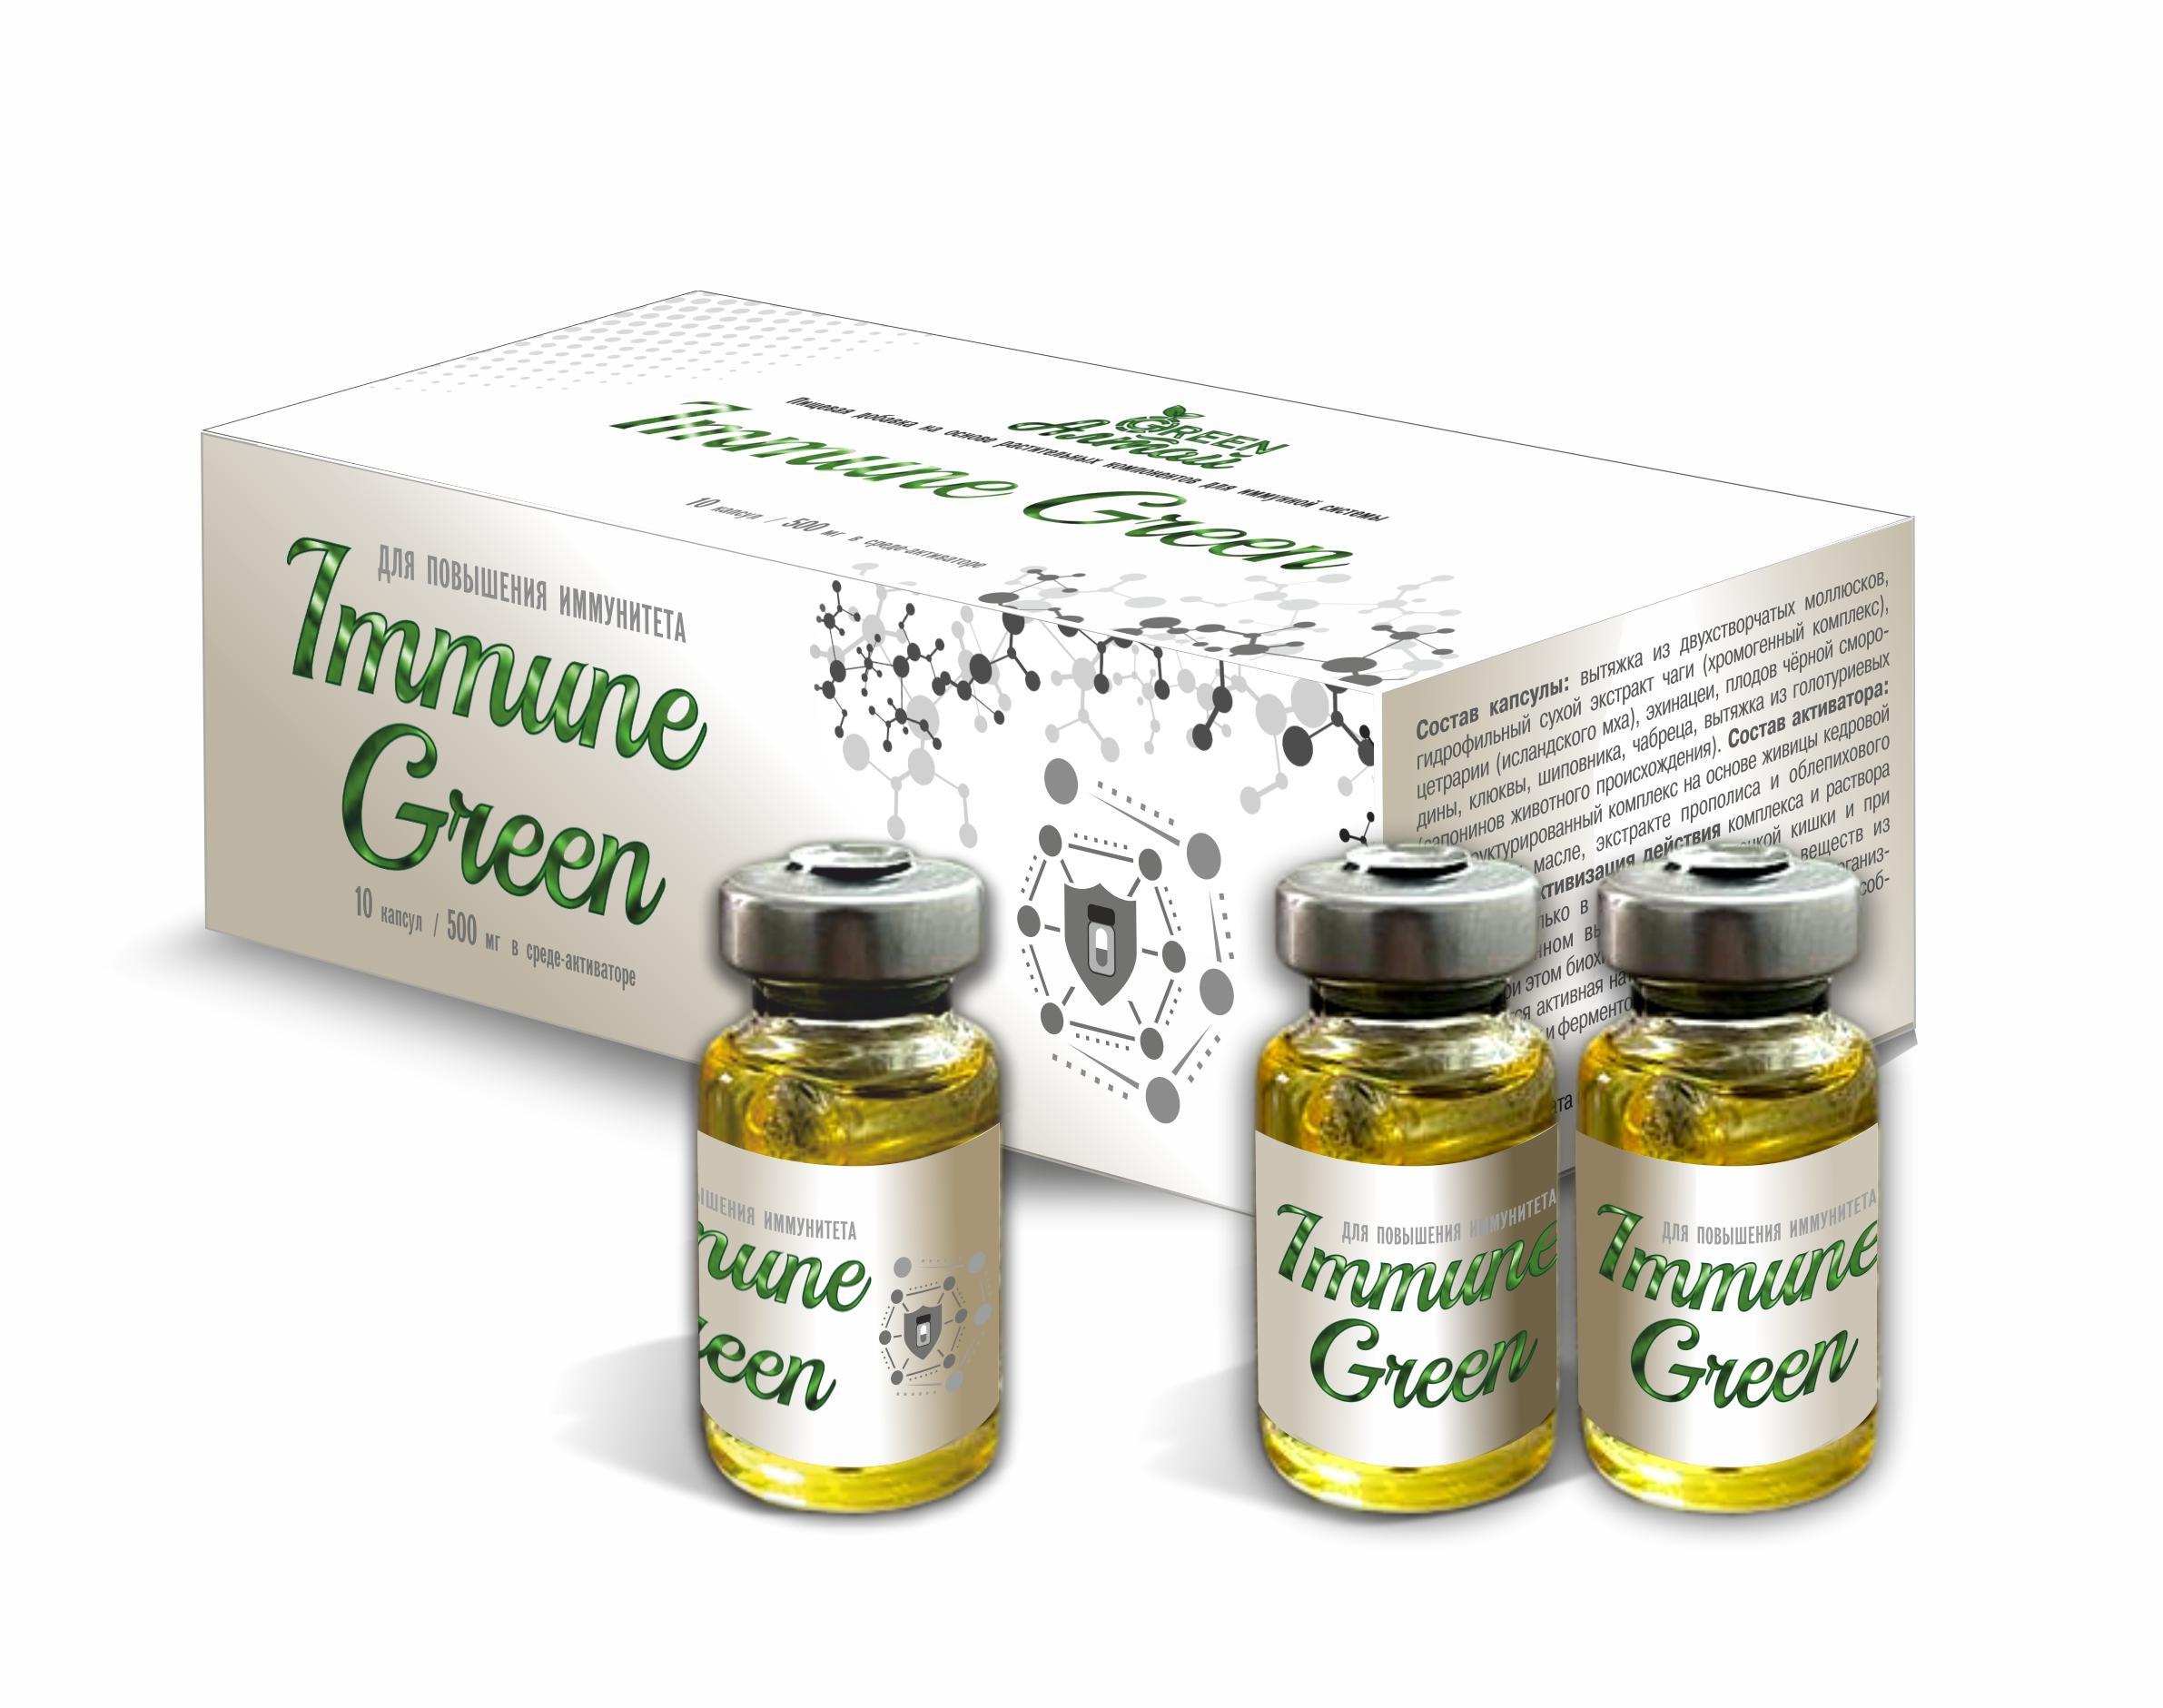 Immune Green Повышение иммунитета, капсула в среде-активаторе, 10 шт*500 мг, Амбрелла